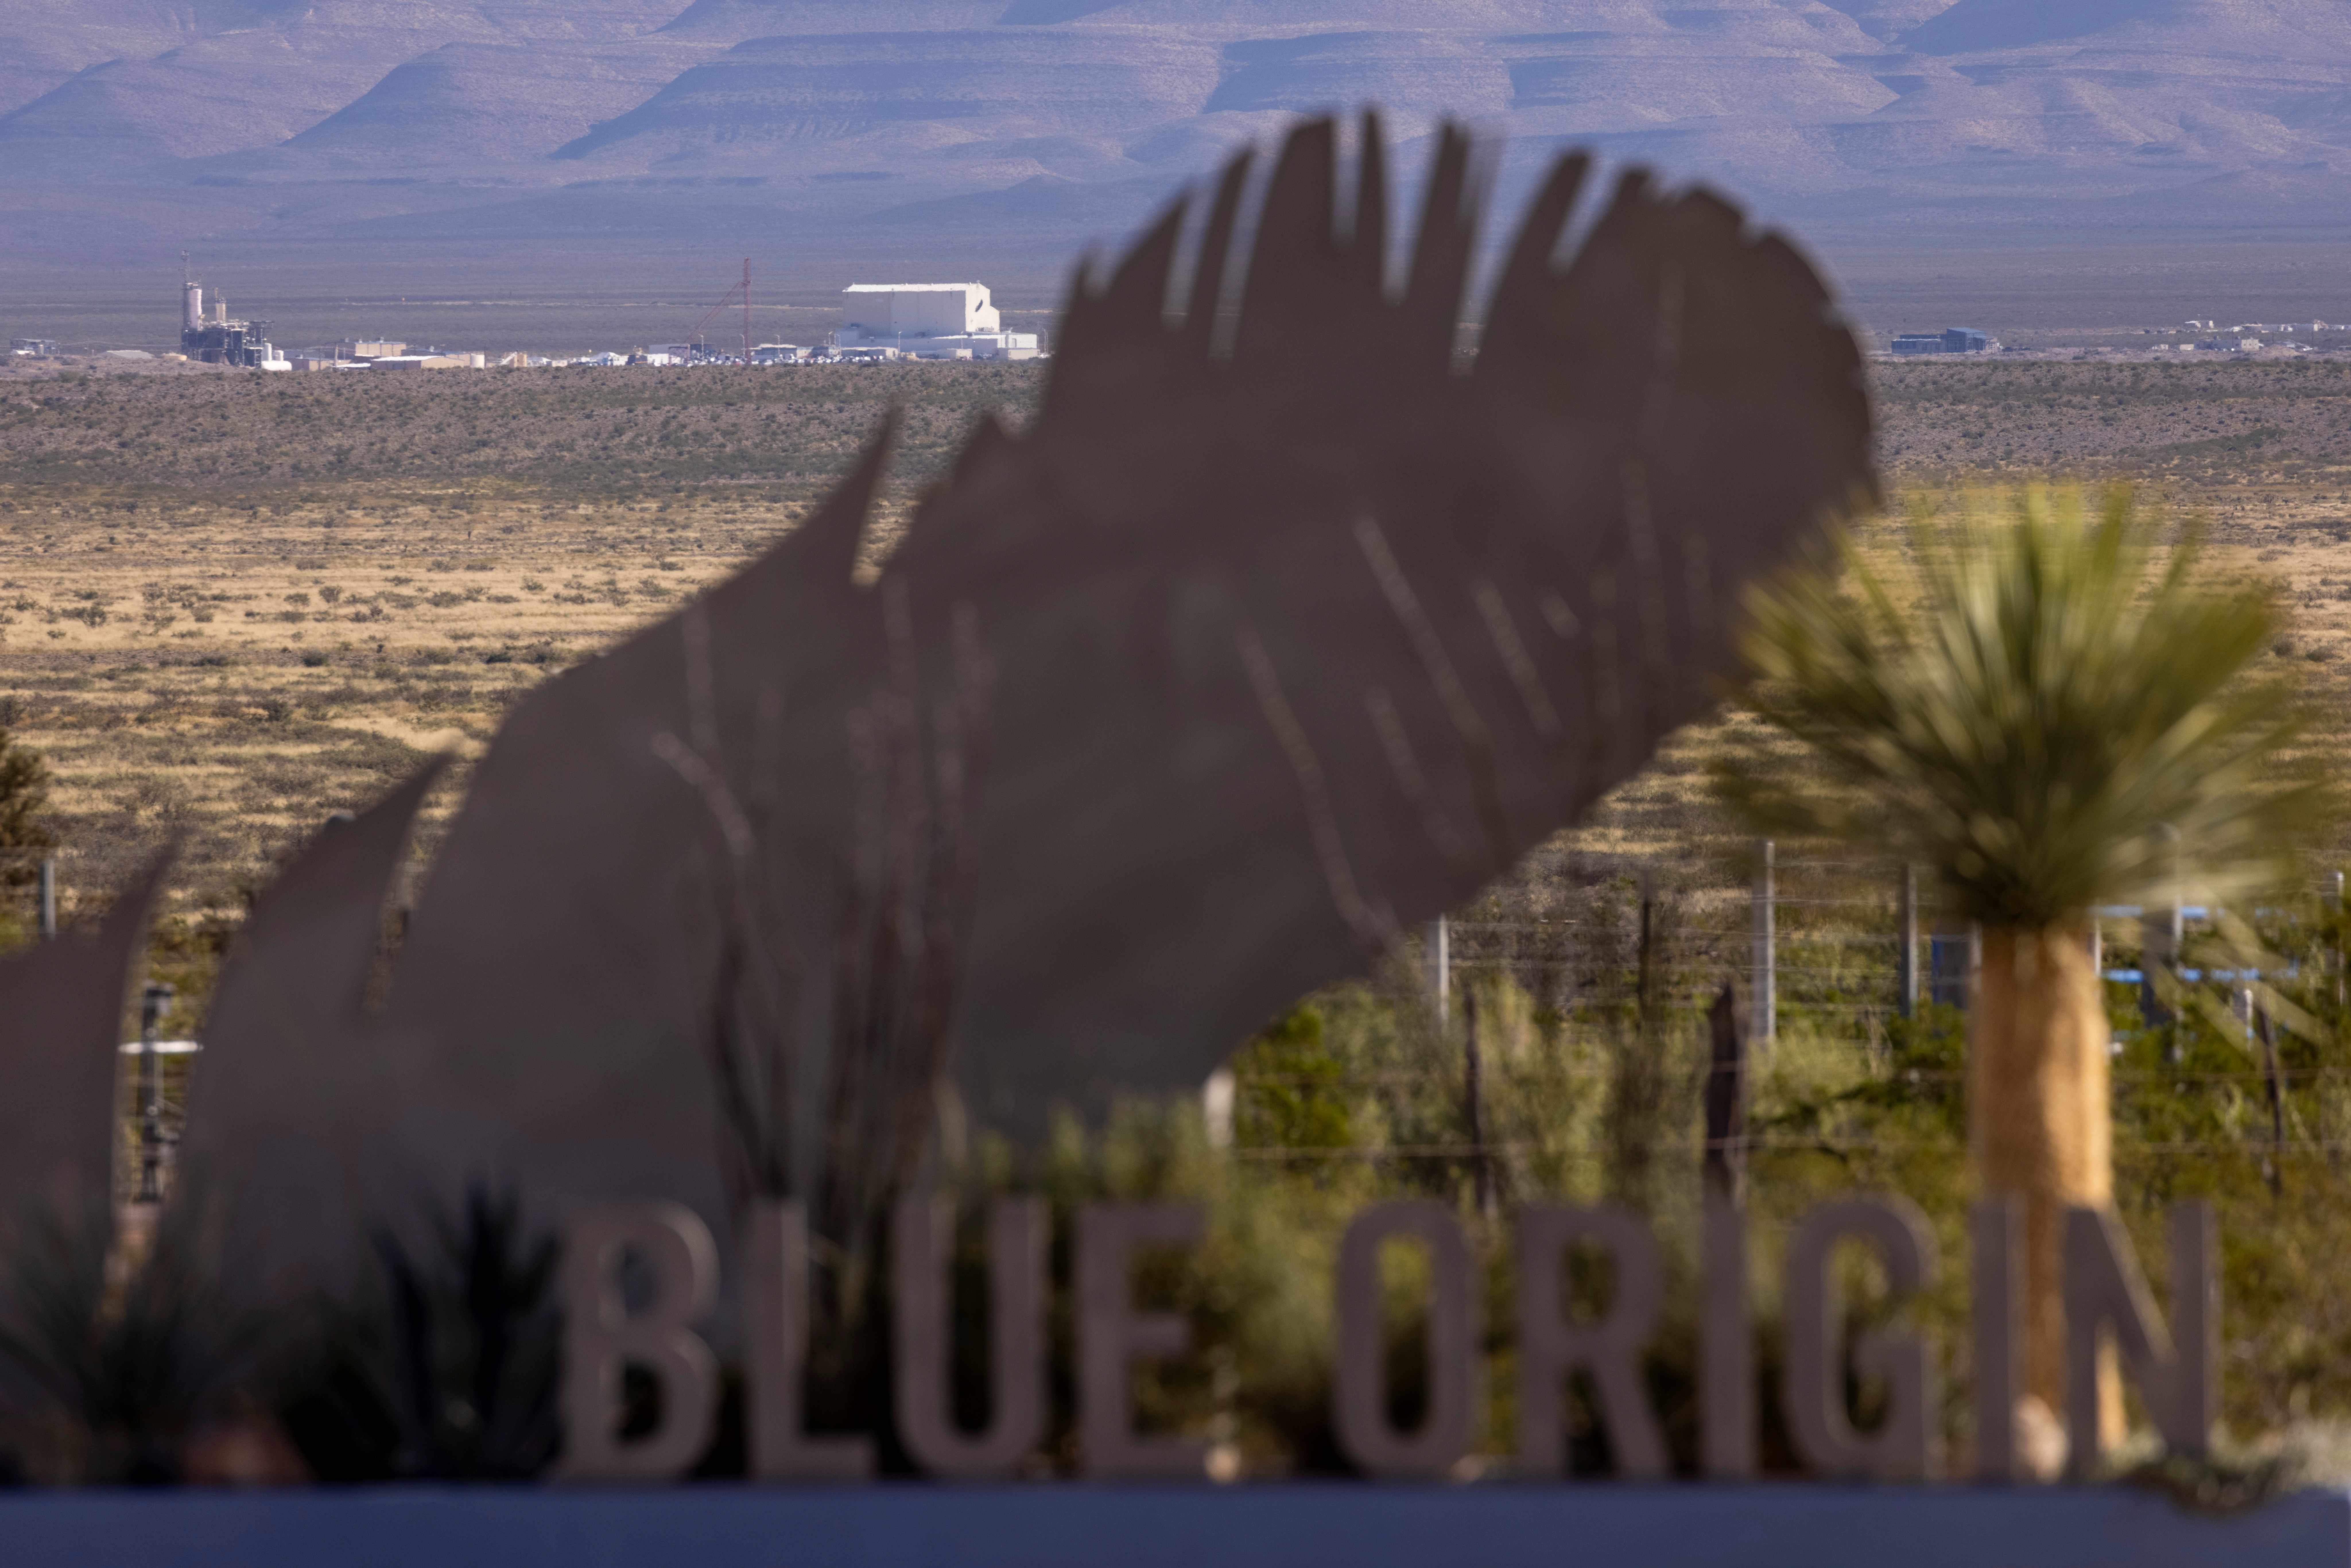 Billionaire Jeff Bezos's space company Blue Origin will send 